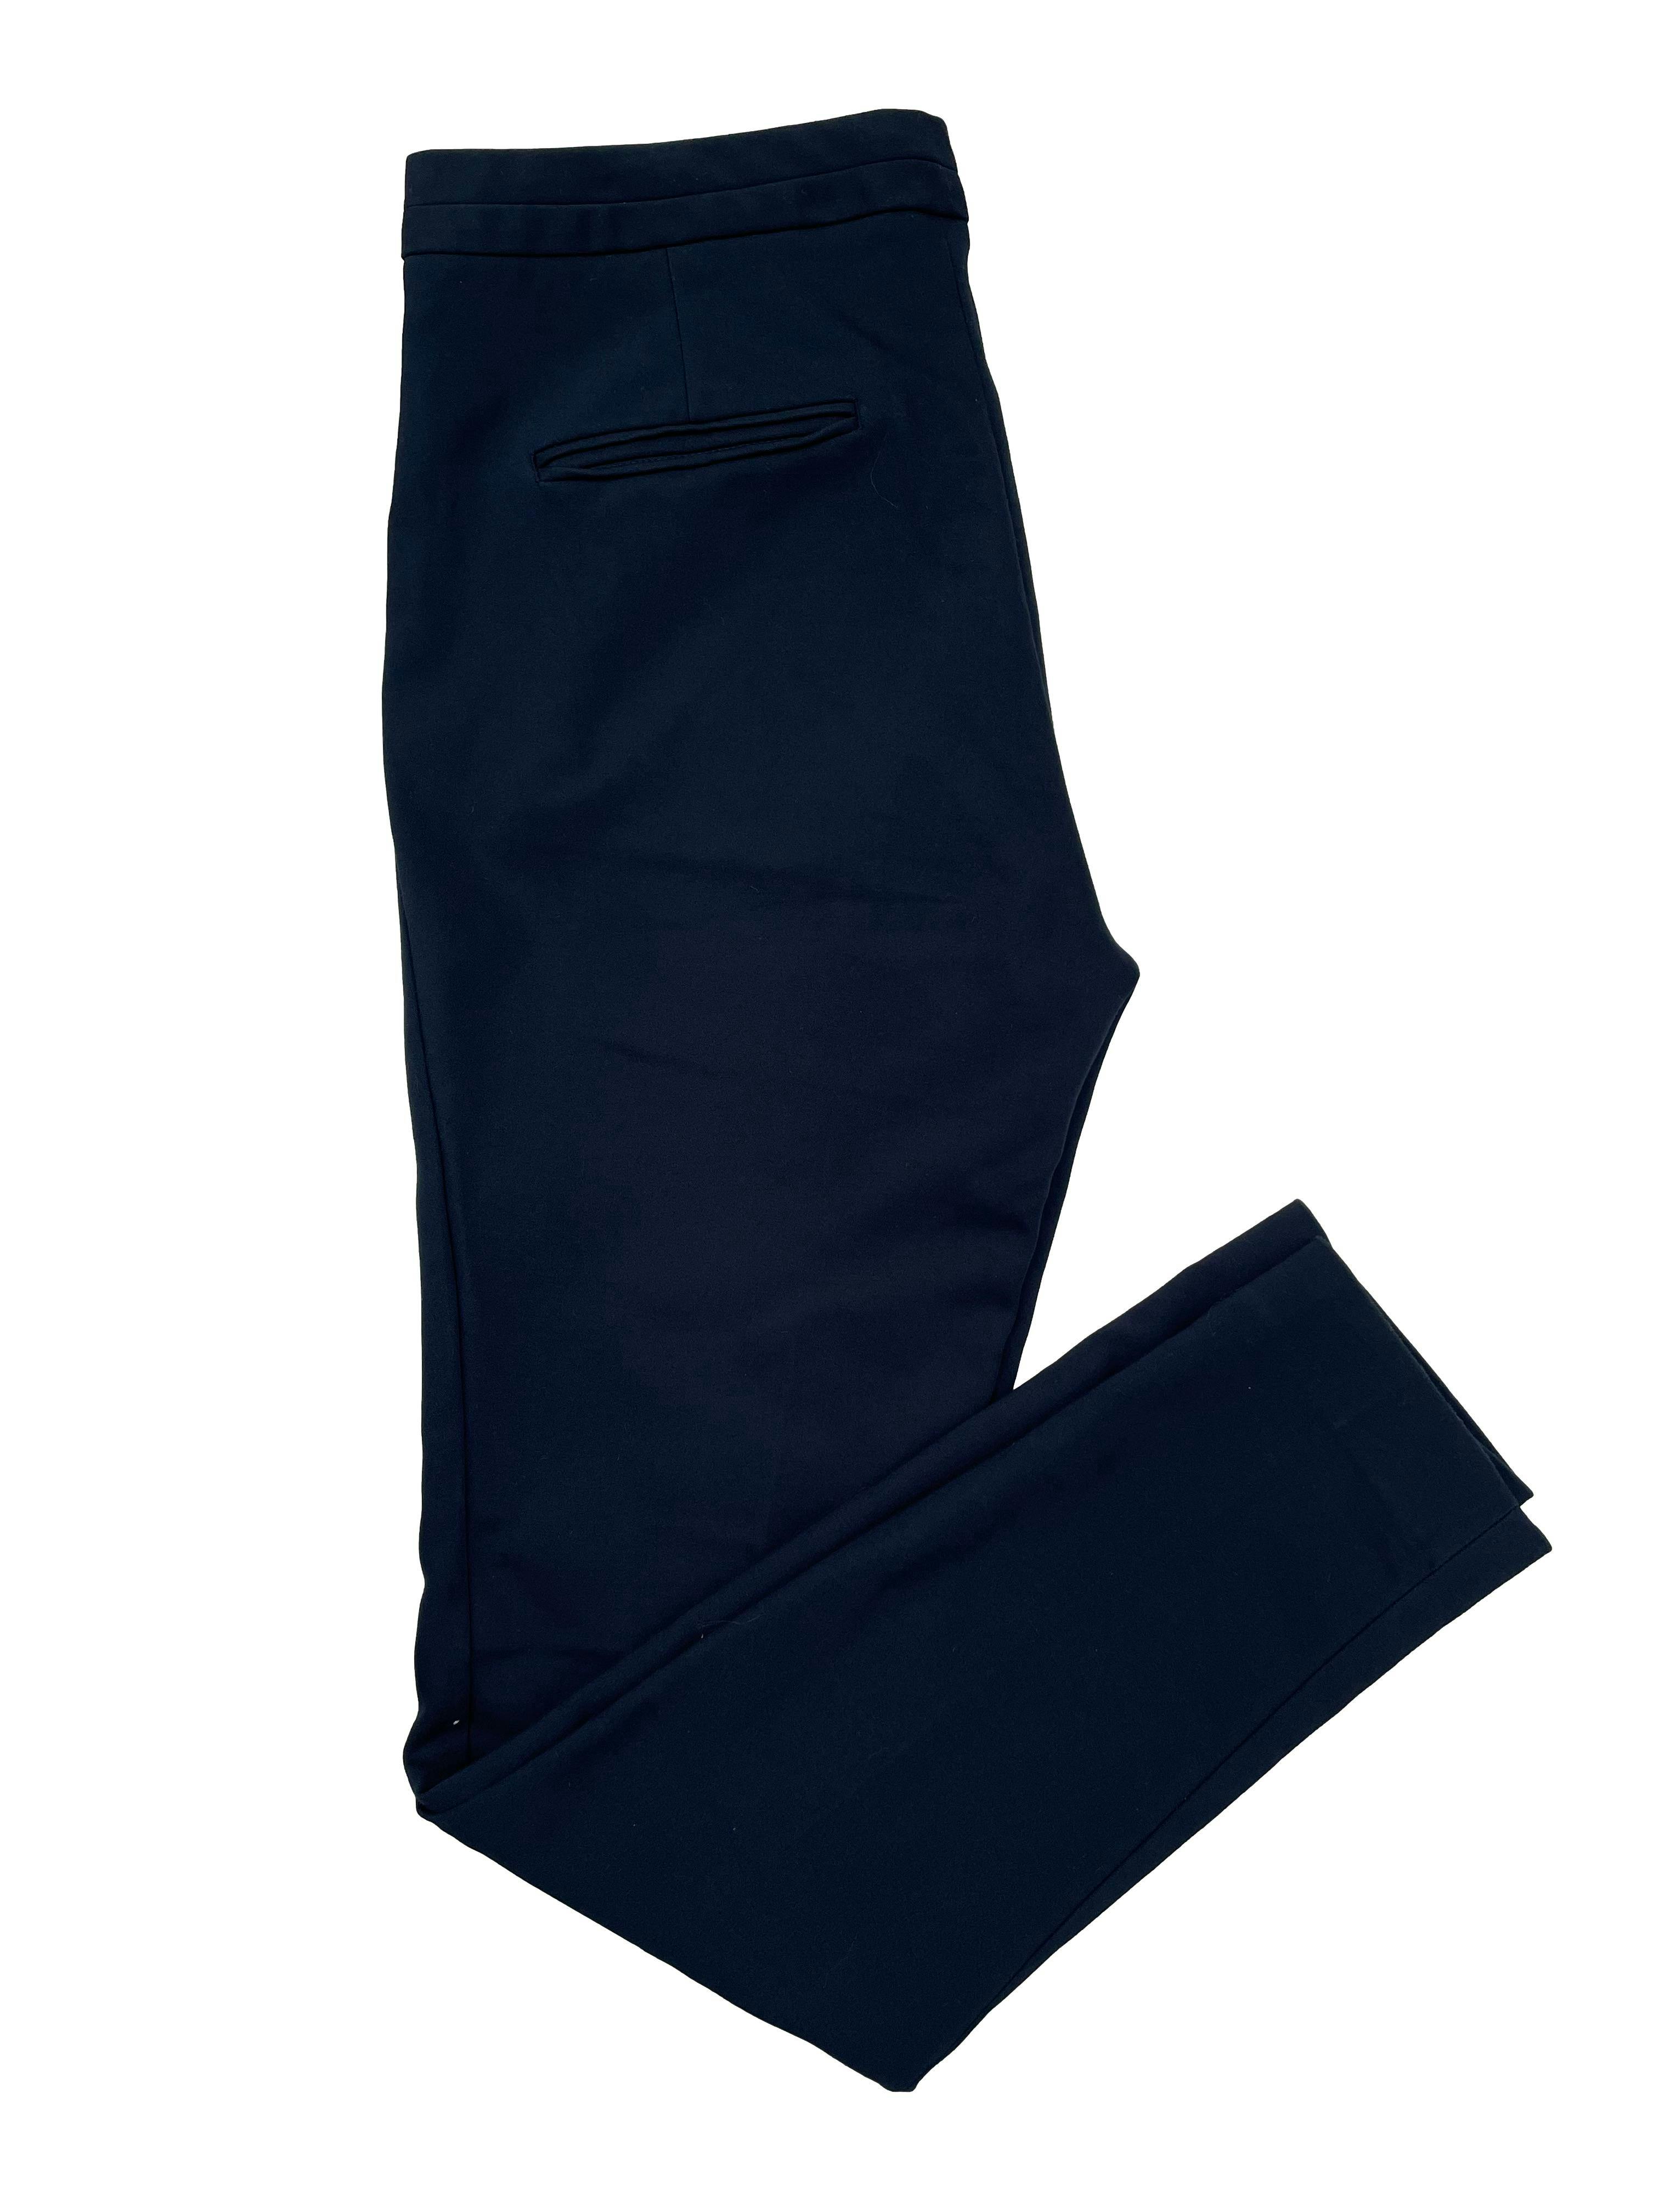 Pantalón formal Zara azul, corte slim, cierre y broche delanteros. Cintura 80cm Tiro 25cm Largo 95cm